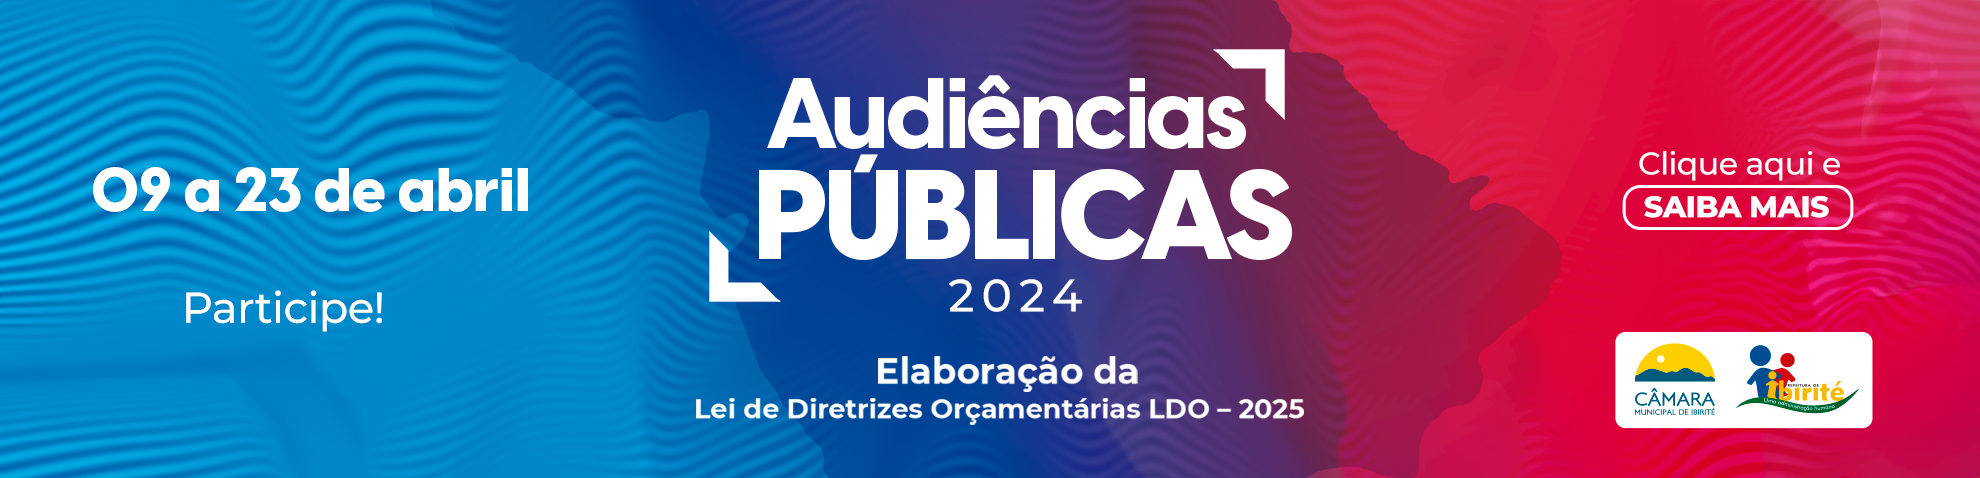 Audincias Pblicas 2024 - LDO 2025